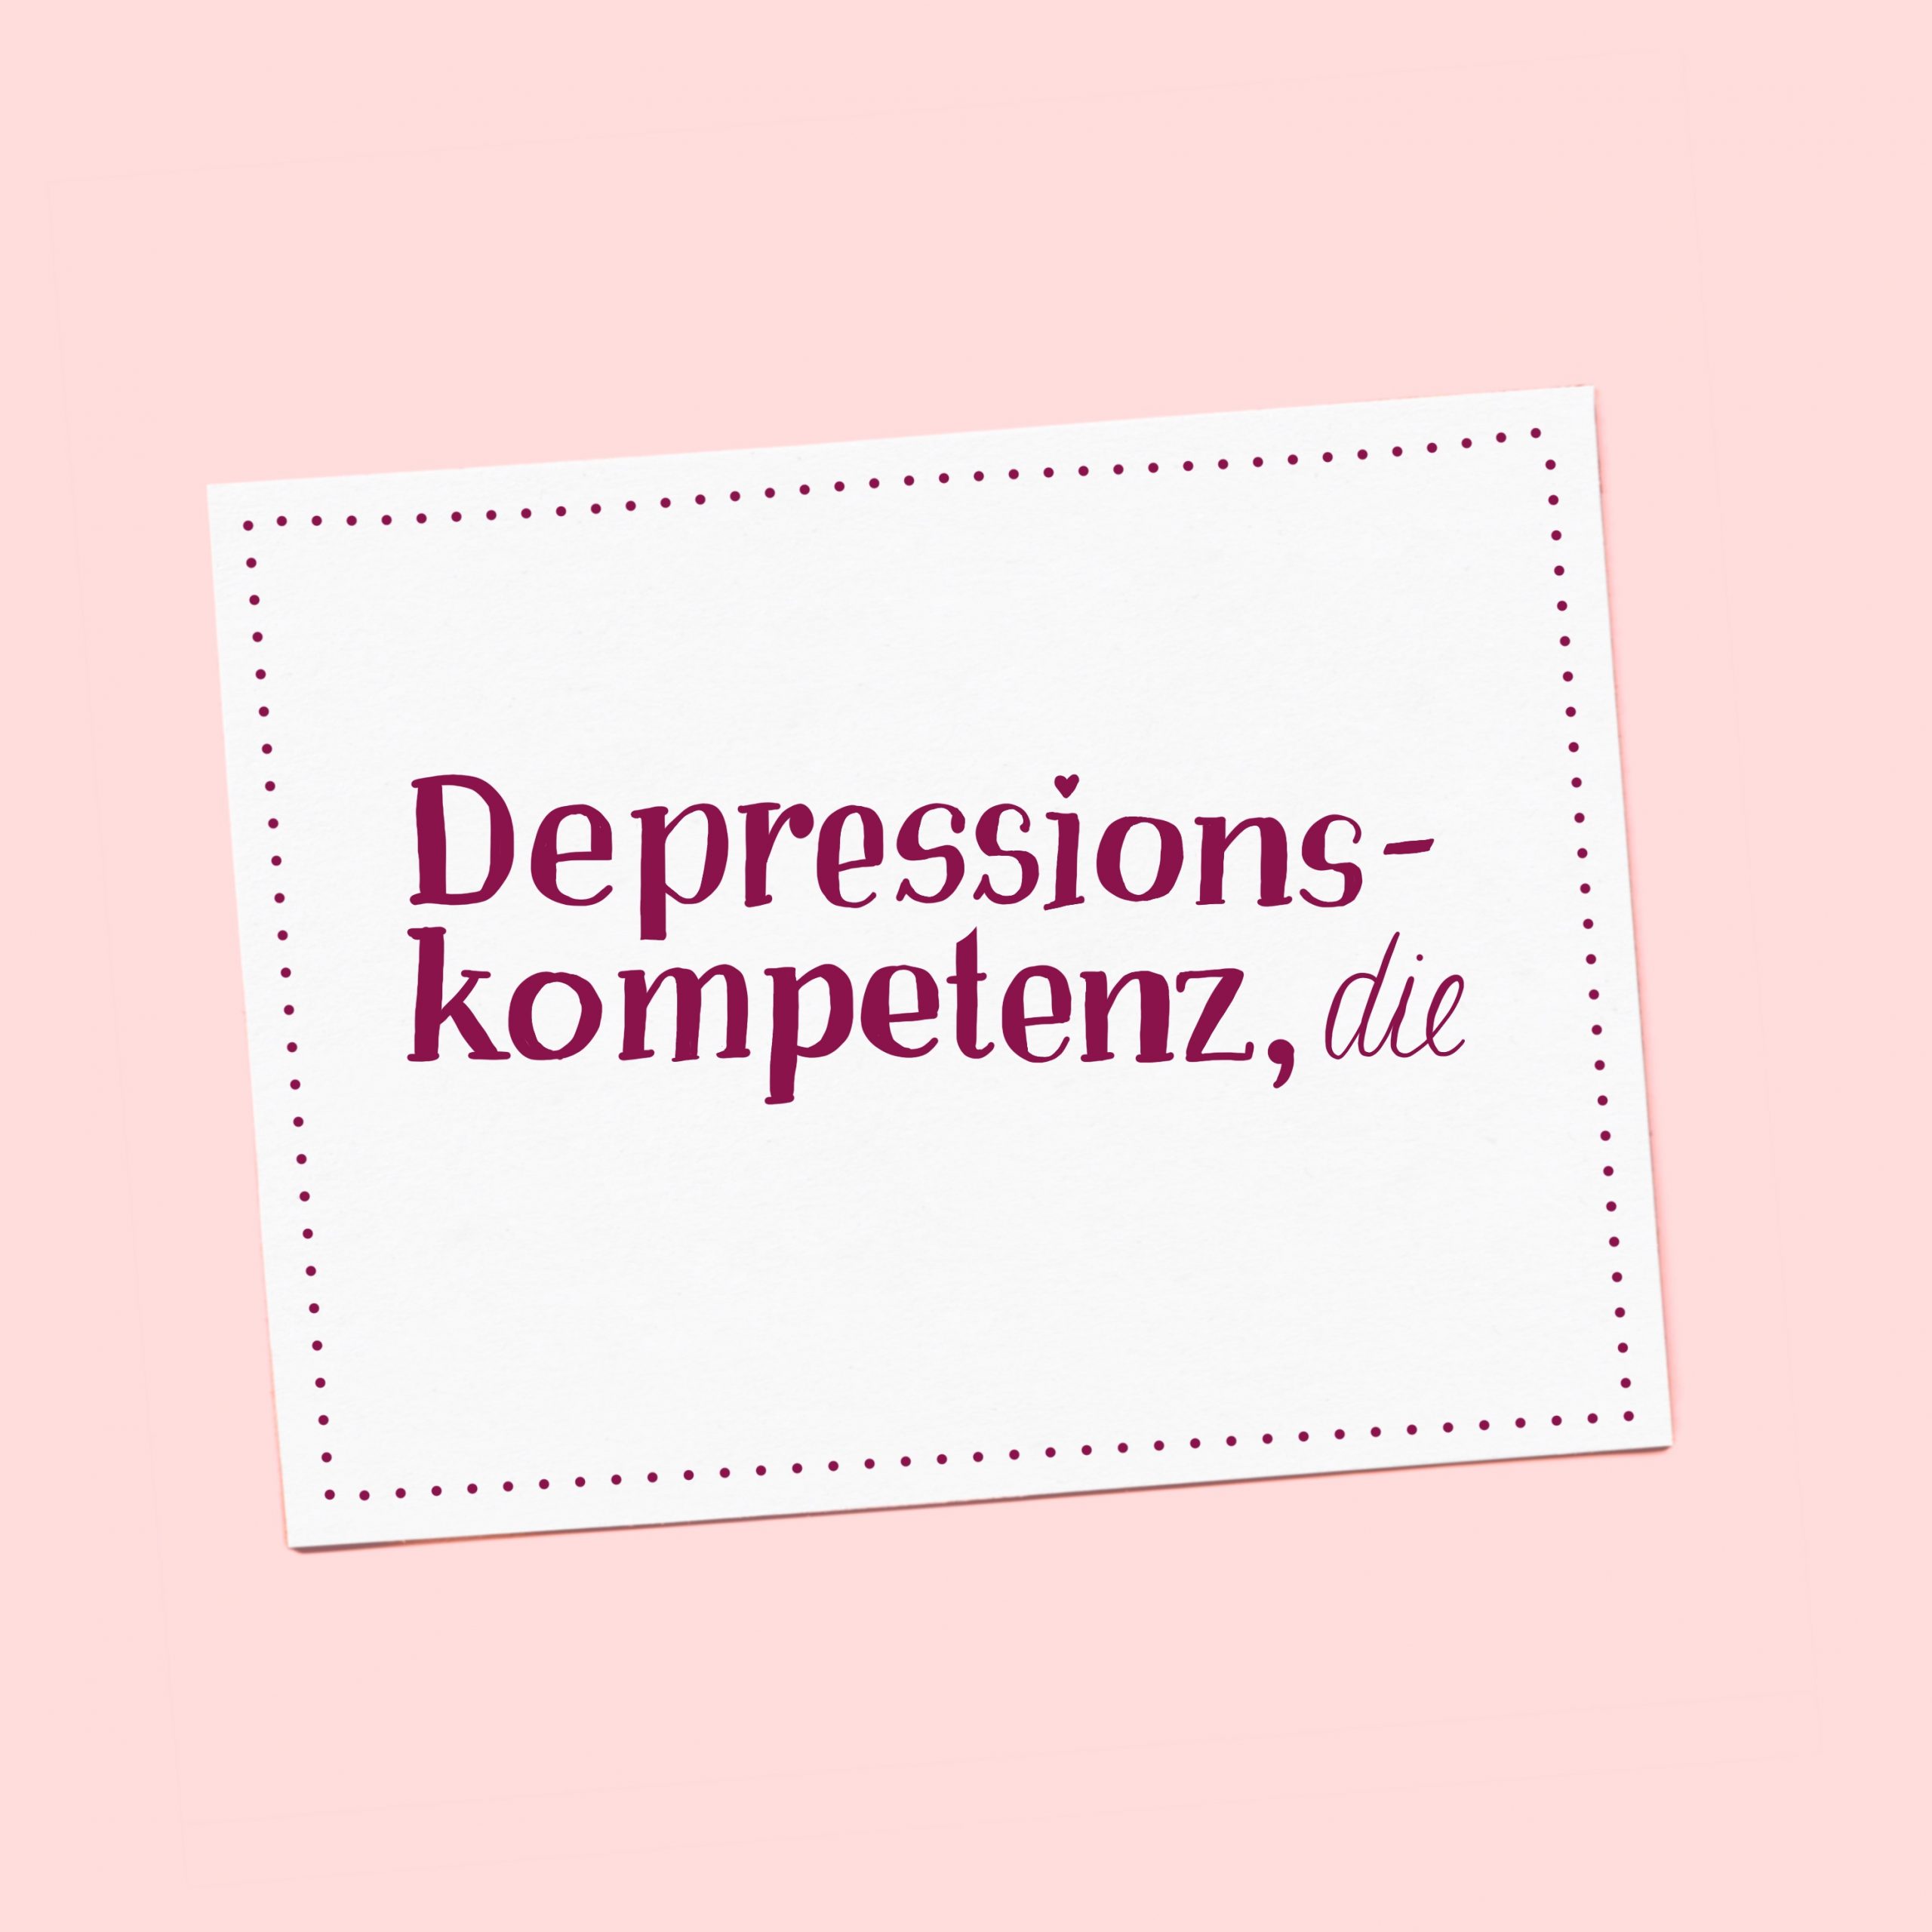 depressionskompetenz, die